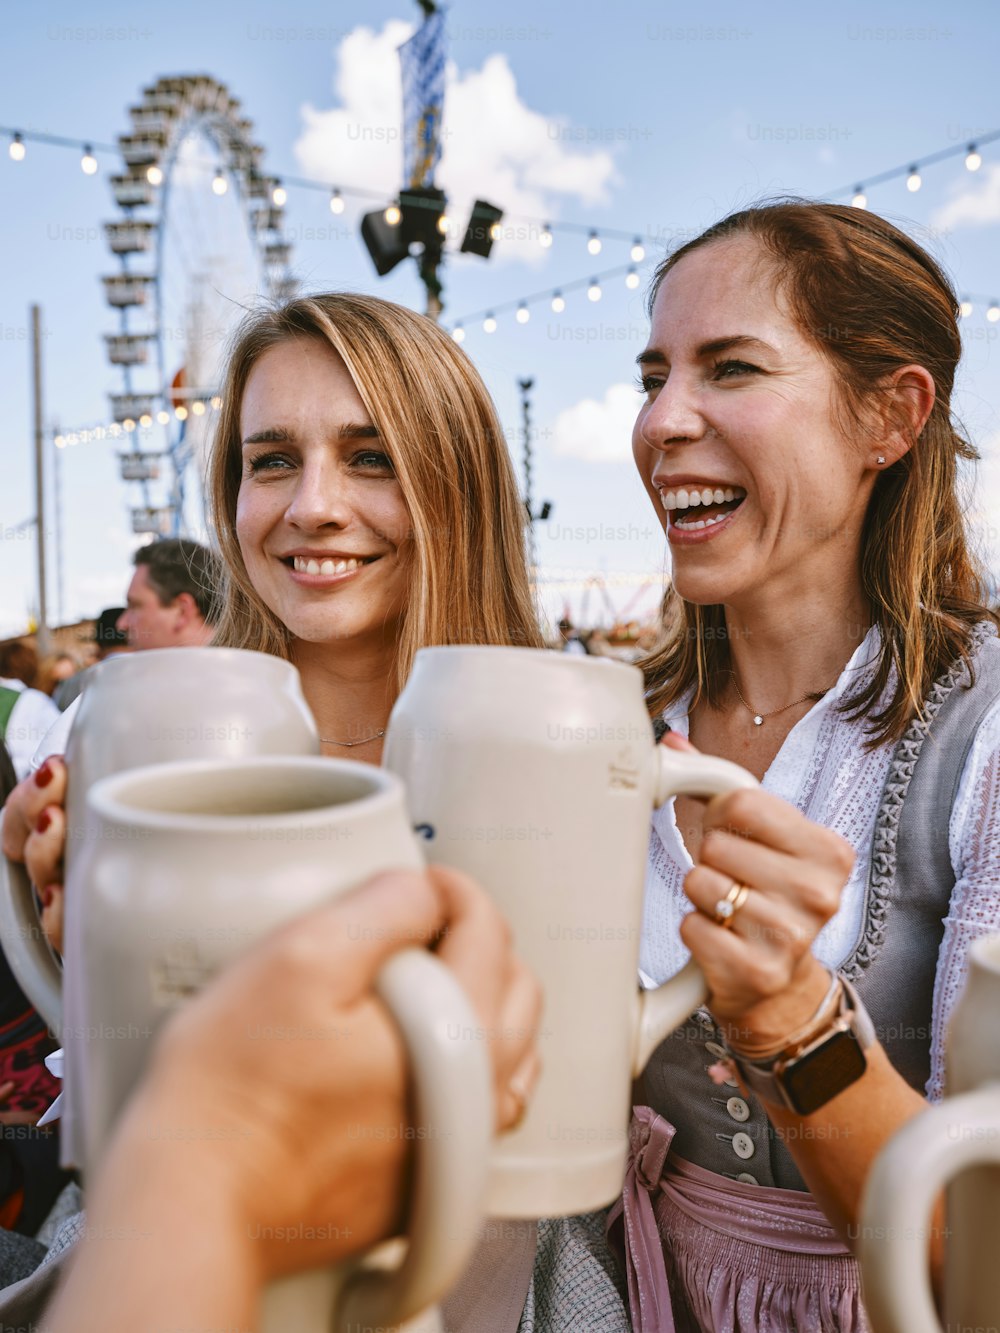 두 명의 여성이 커피잔을 들고 나란히 서 있다